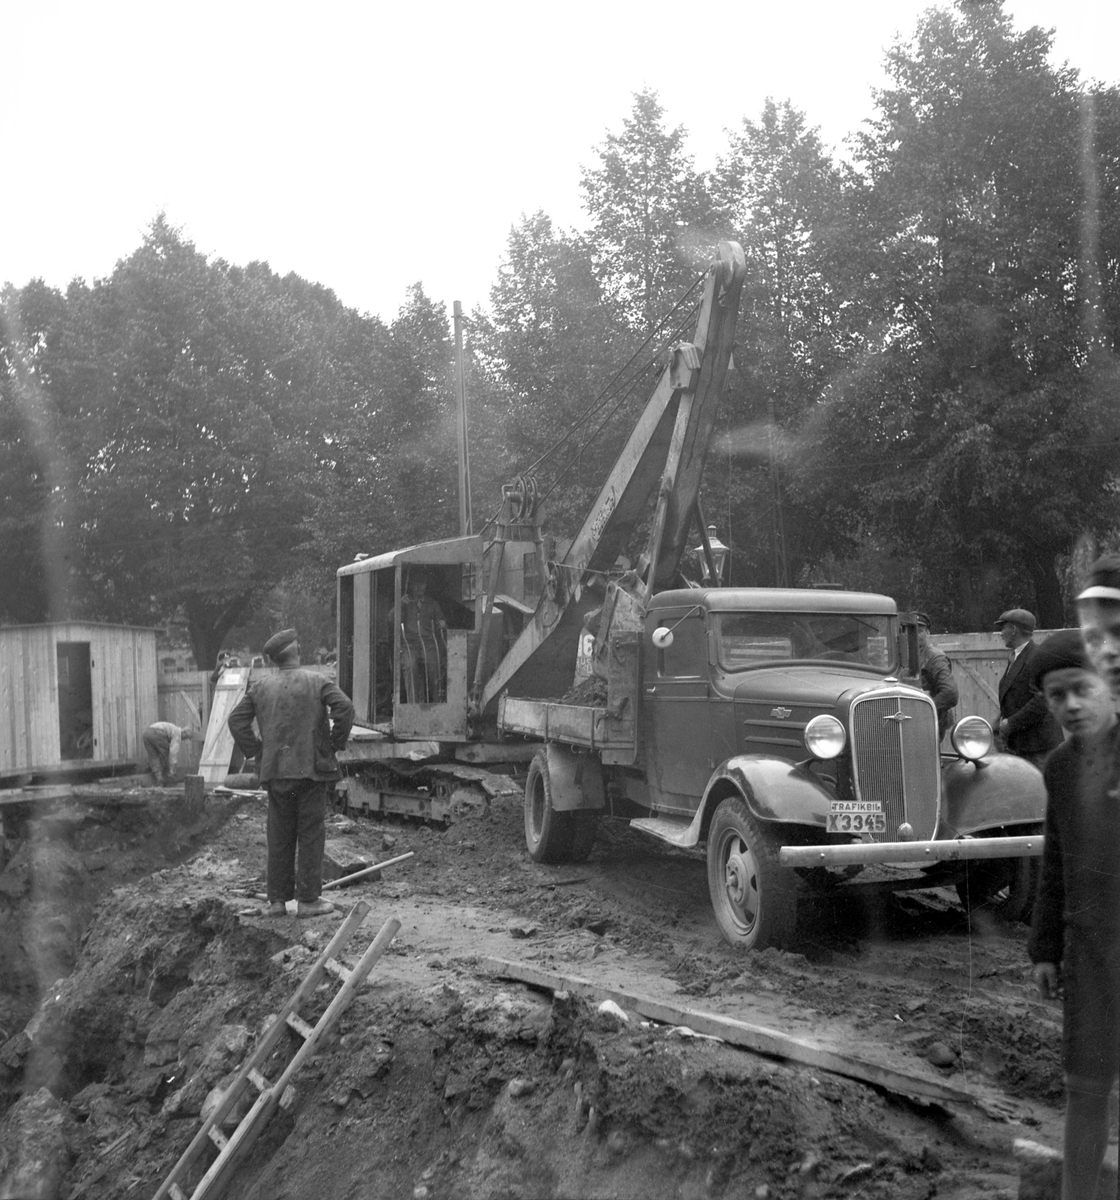 Reportage för Arbetarbladet. Diverse gårdar och byggen. Juli 1937

